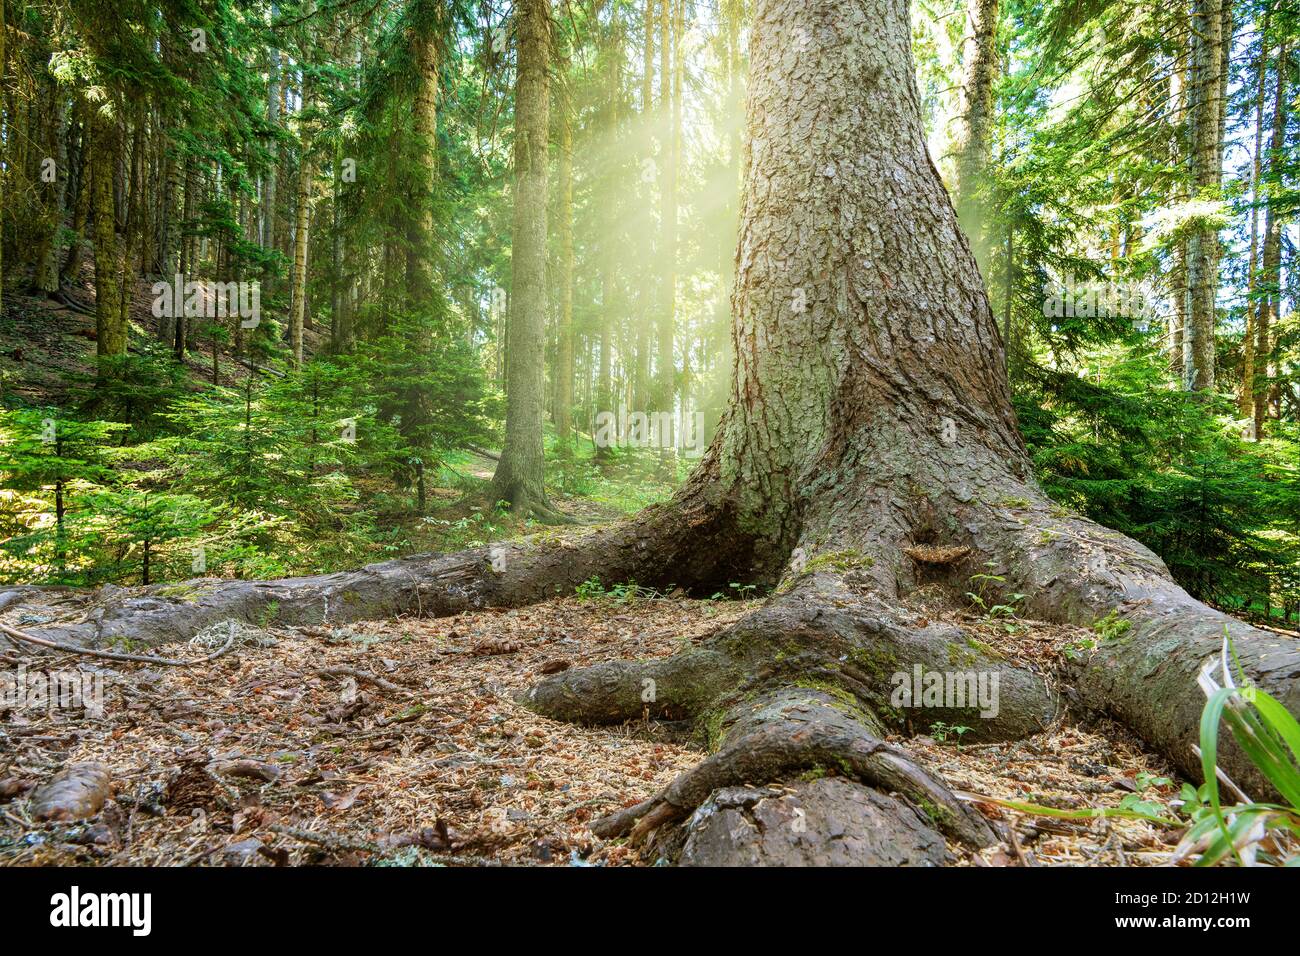 Nahaufnahme eines alten Baumes mit großen Wurzeln in einem wunderschönen Wald im Frühling mit strahlender Sonne, die durch die Bäume scheint. Hochwertige Fotos Stockfoto